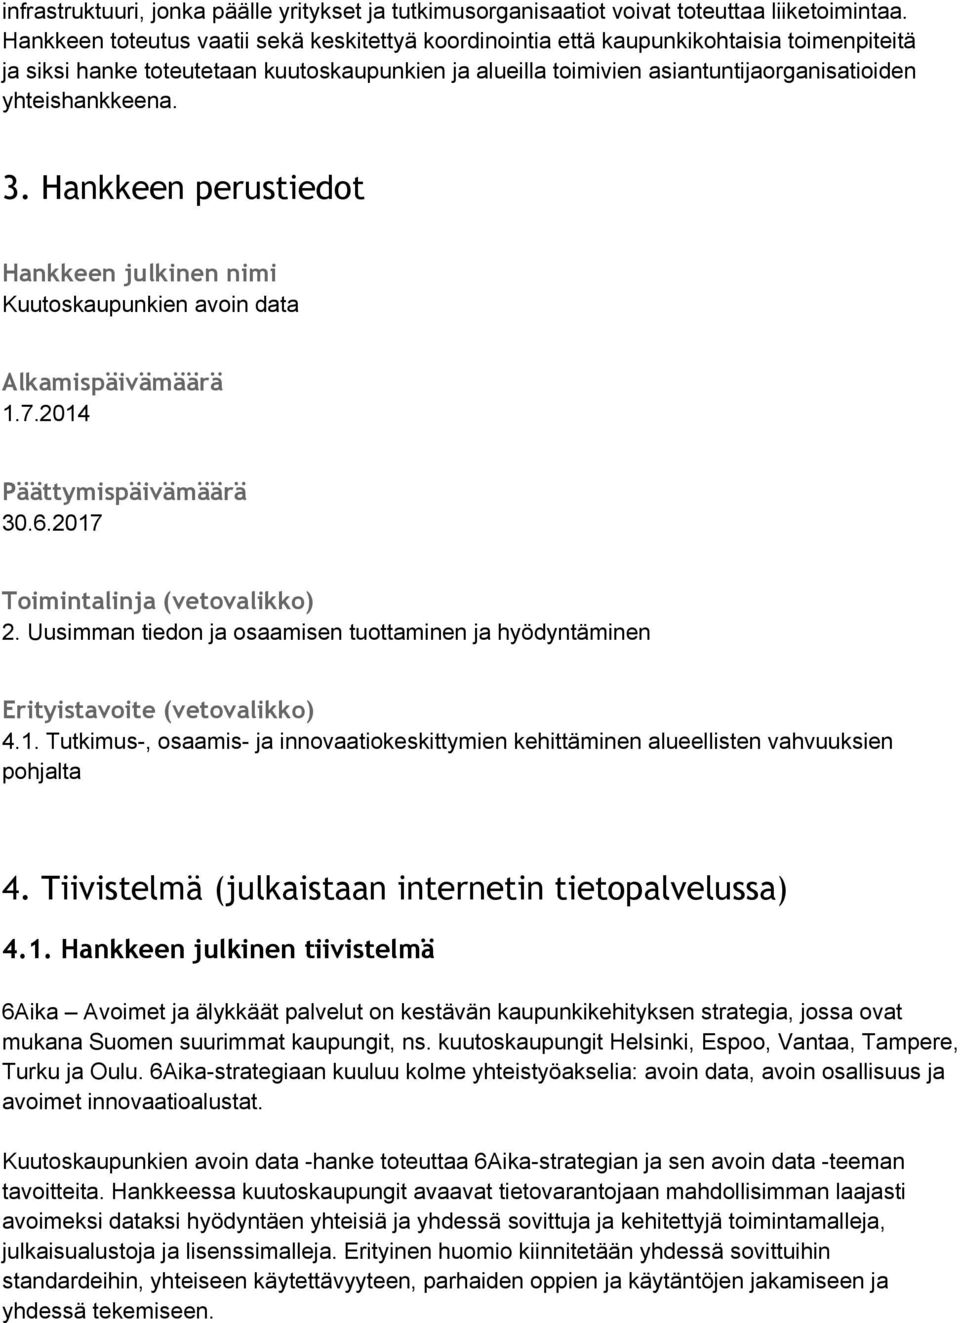 yhteishankkeena. 3. Hankkeen perustiedot Hankkeen julkinen nimi Kuutoskaupunkien avoin data Alkamispäivämäärä 1.7.2014 Päättymispäivämäärä 30.6.2017 Toimintalinja (vetovalikko) 2.